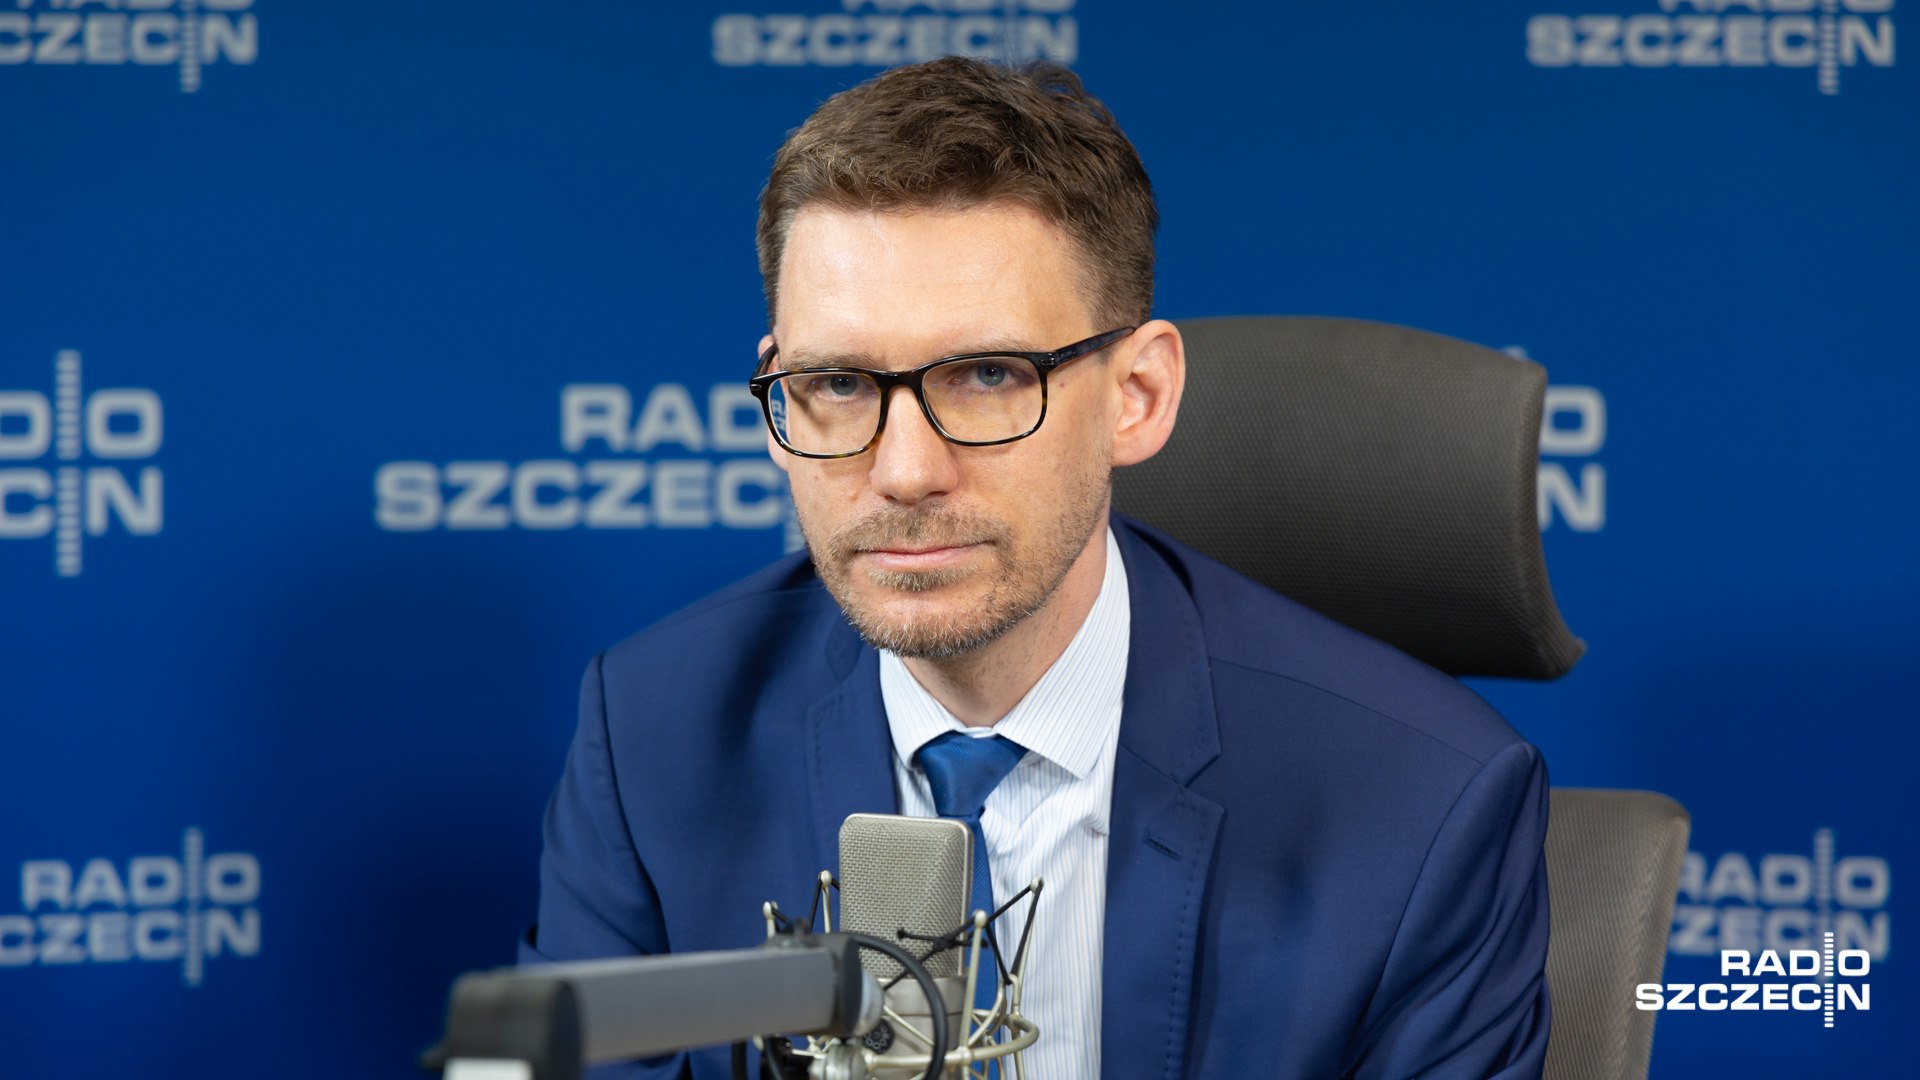 Do wakacji przejezdne będą place Rodła i Żołnierza - zapowiadał w Rozmowach pod Krawatem odpowiedzialny za inwestycje zastępca prezydenta Szczecina - Michał Przepiera.